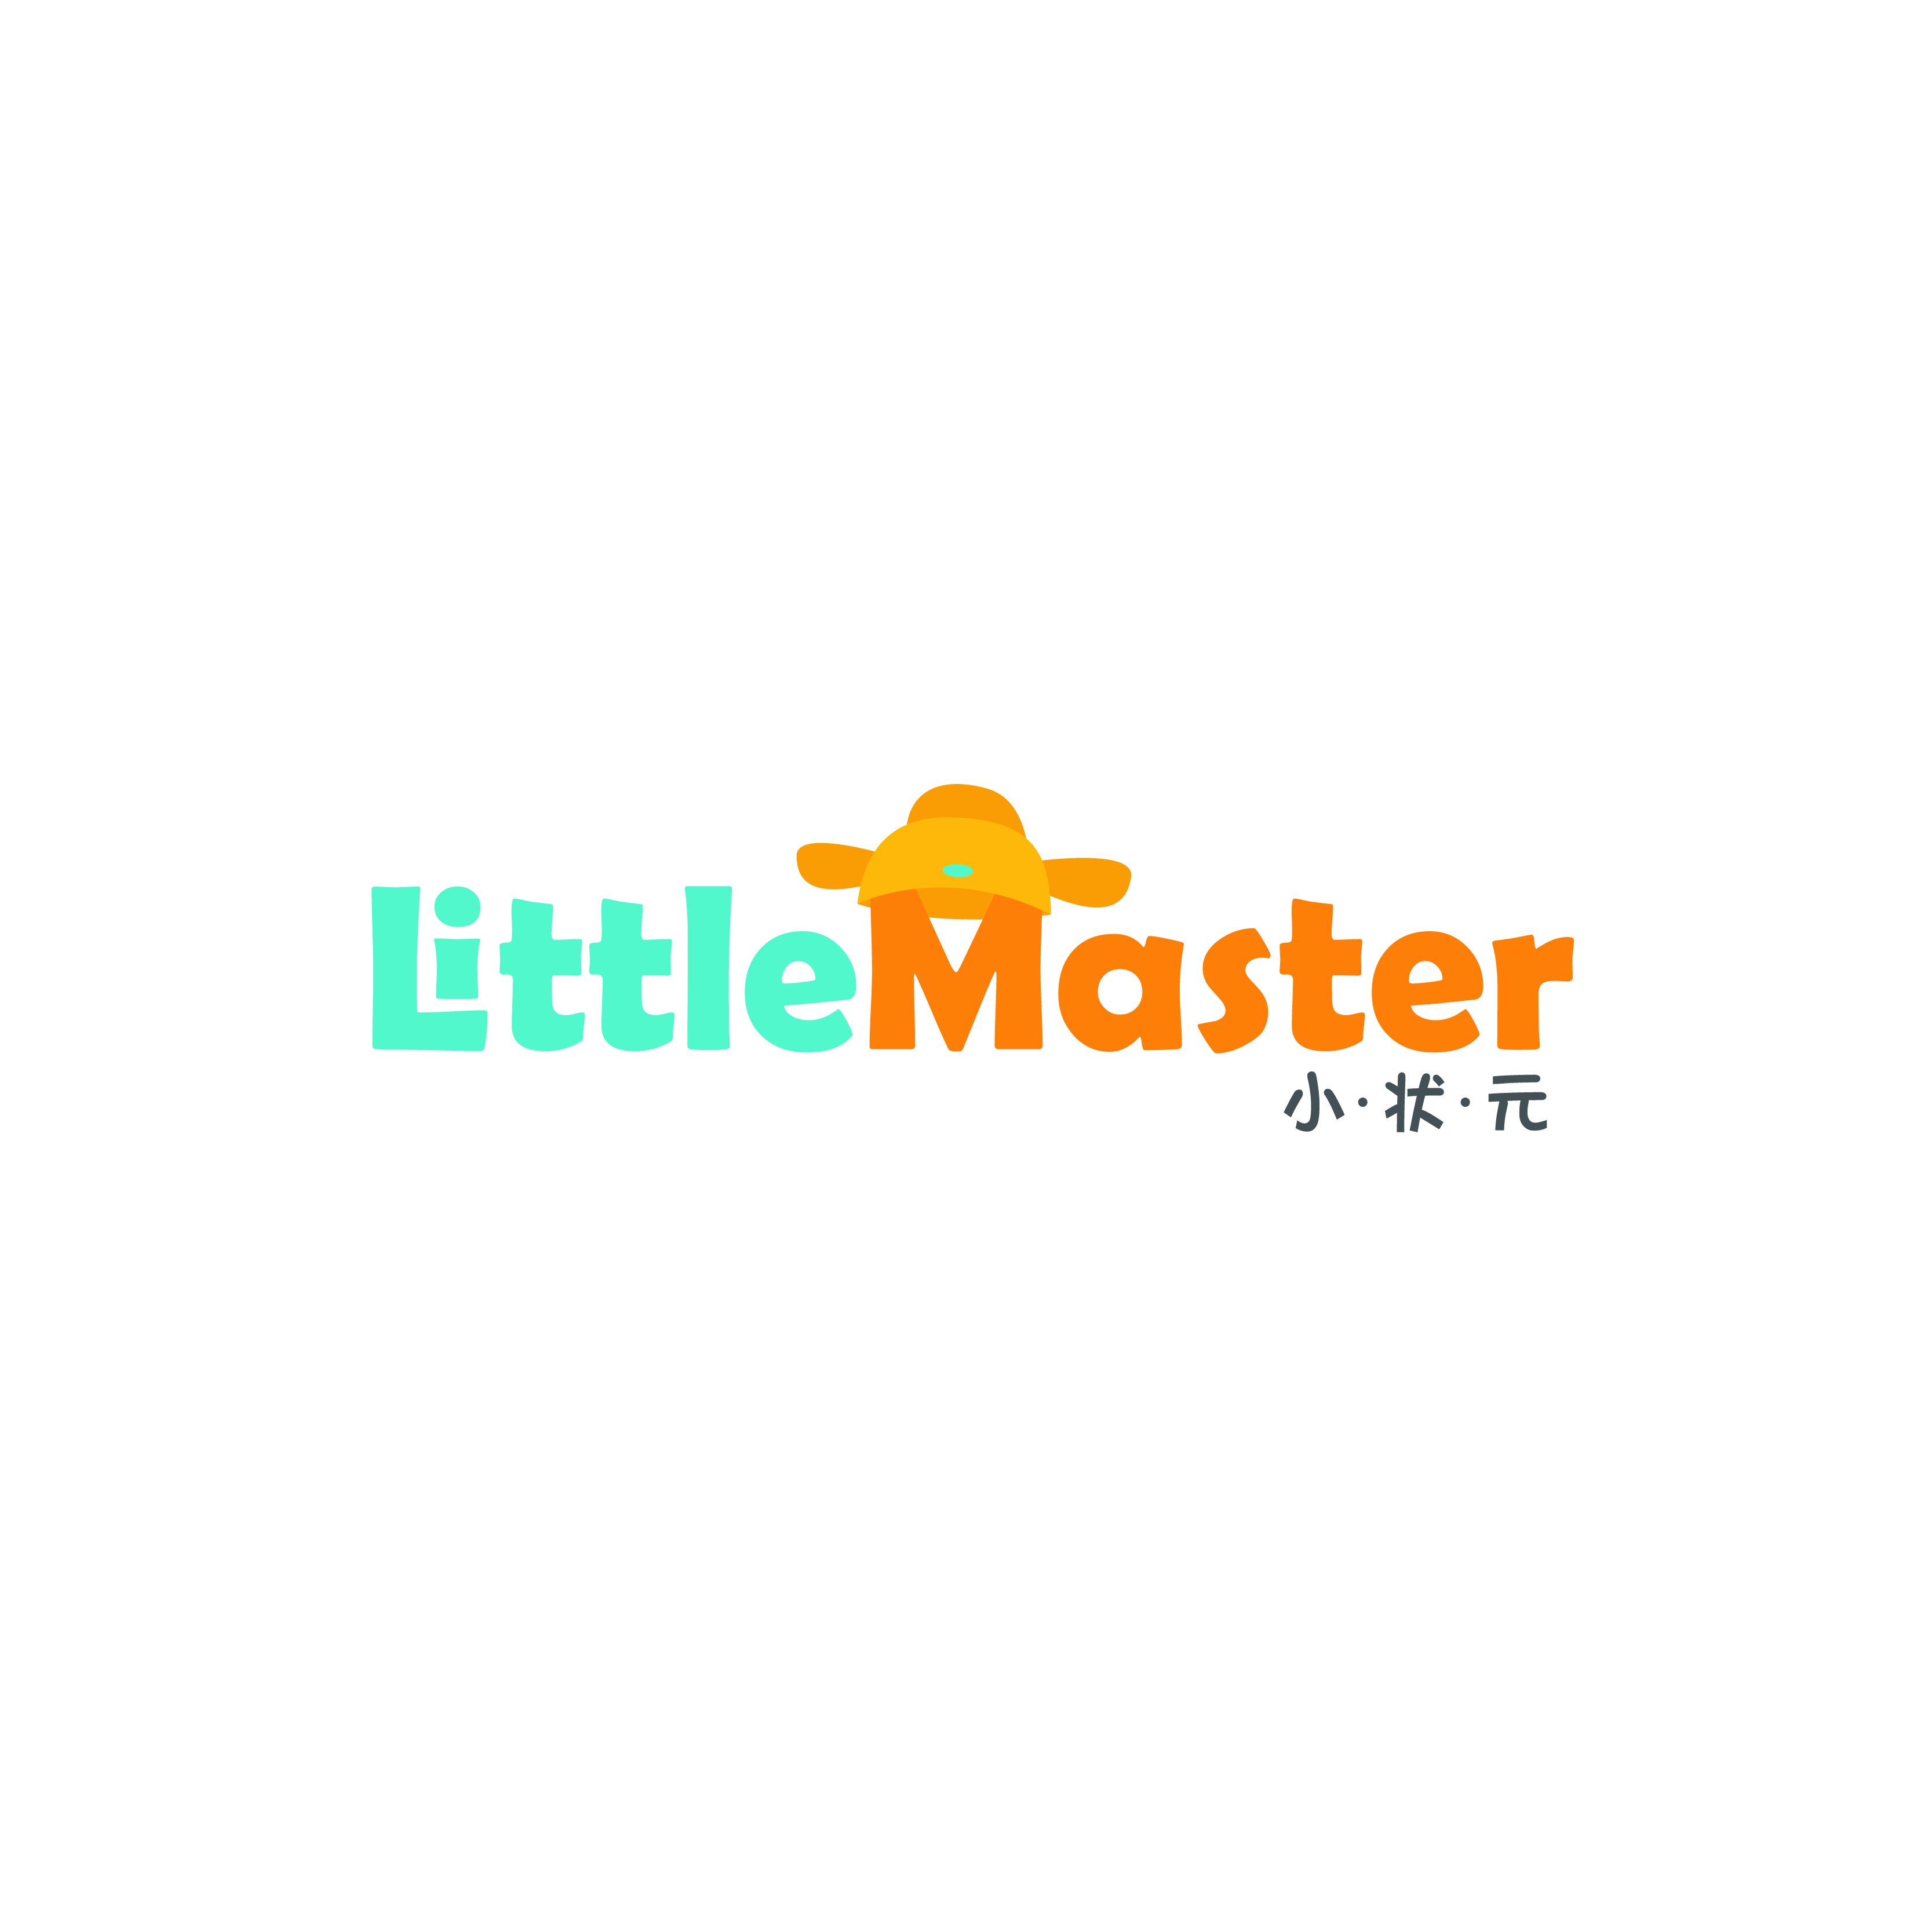 Little Master Headquarter profile picture